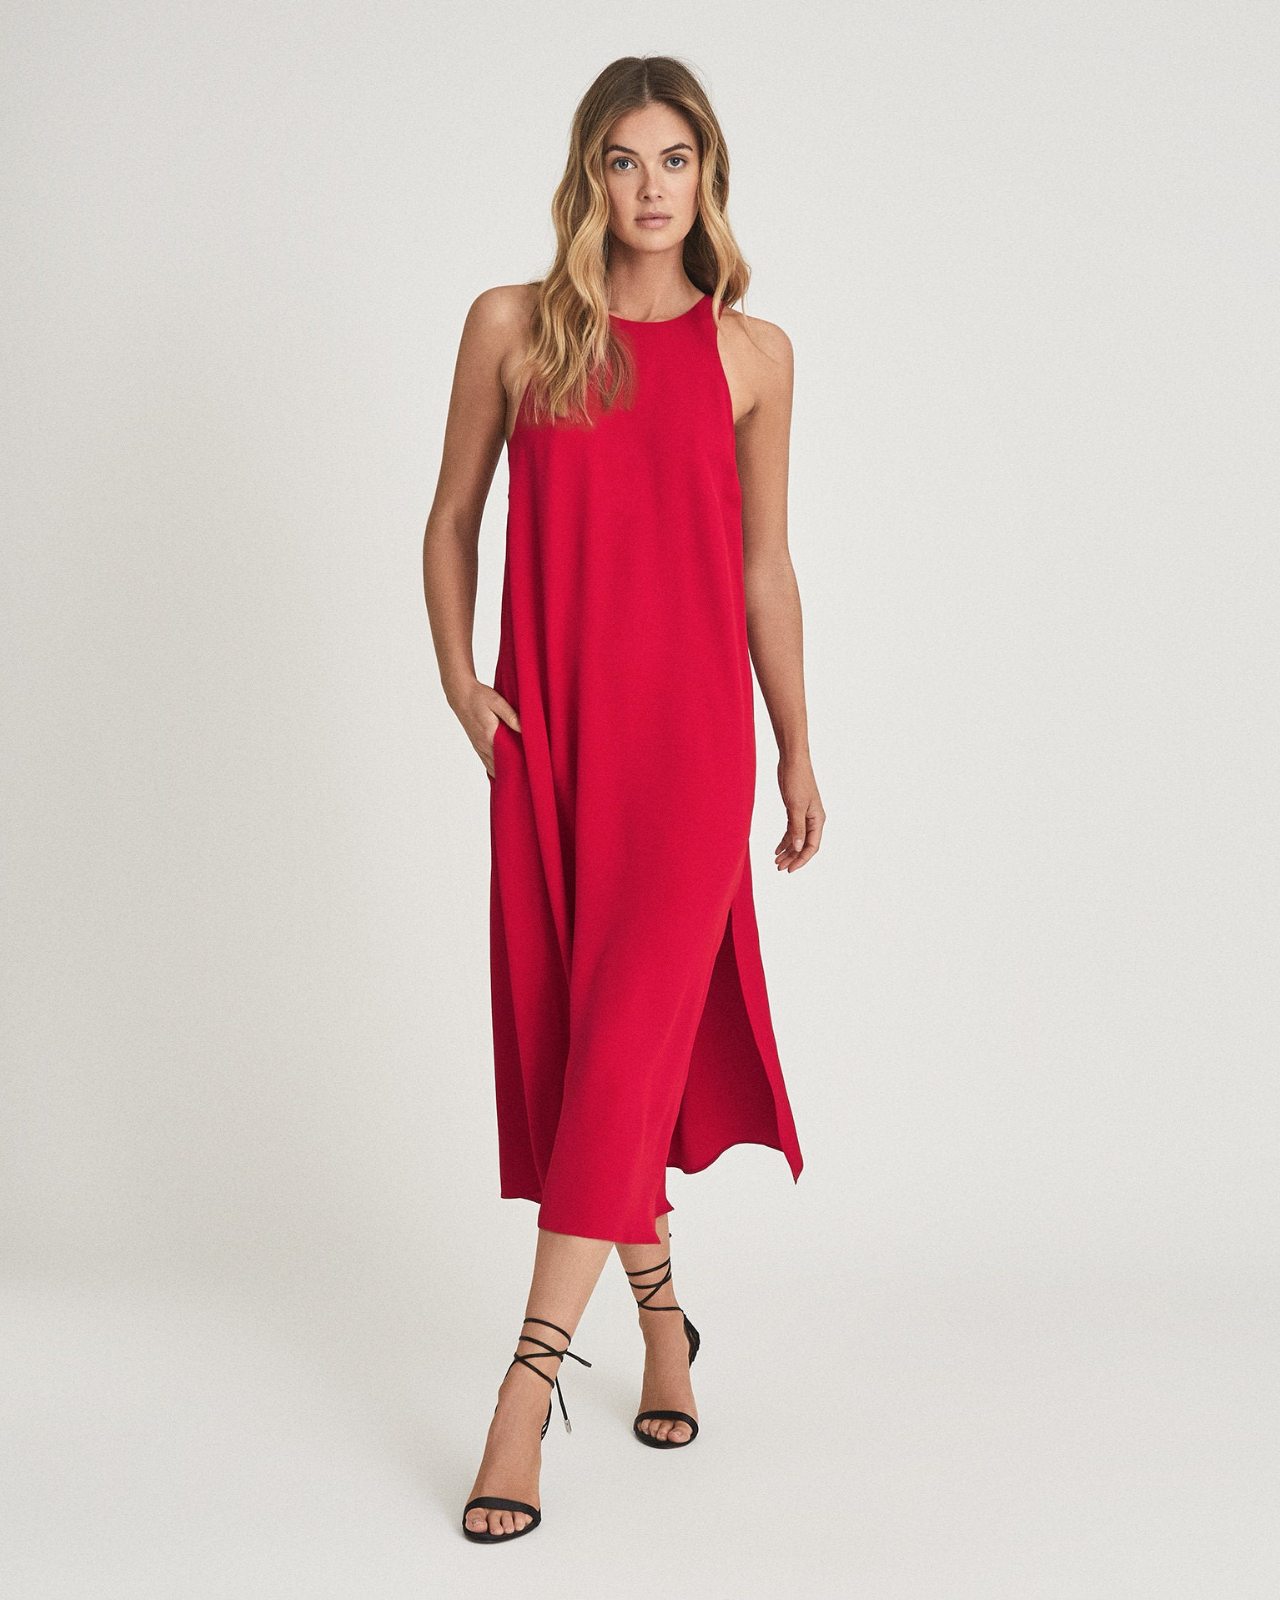 Lorni Red Midi Dress